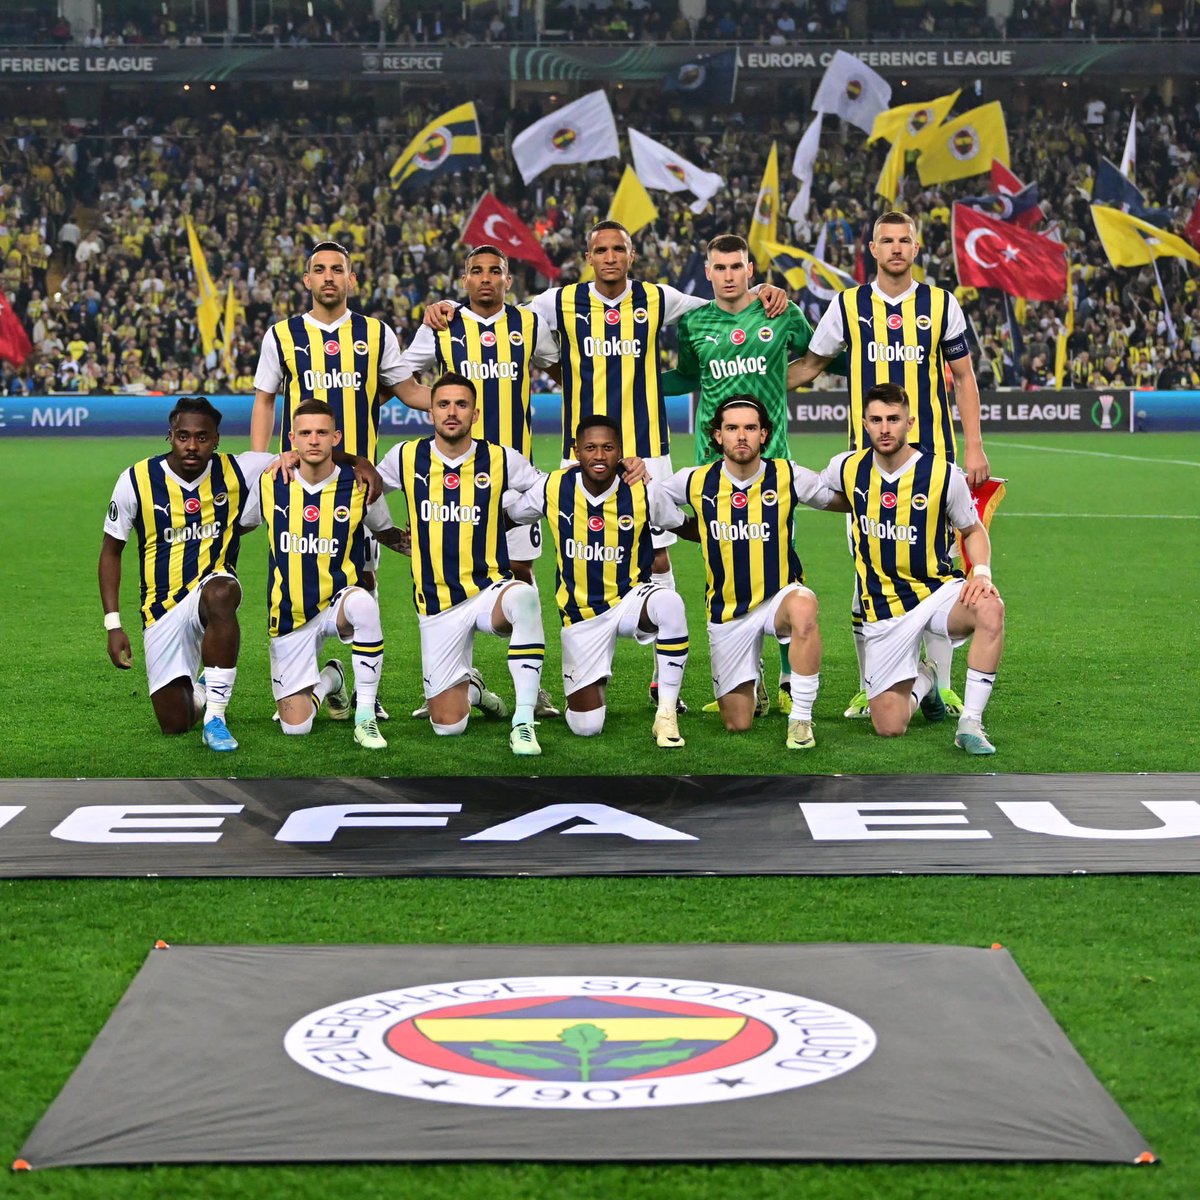 sezon boyunca bu organize yapıya karşı başkansız yönetimsiz tek başına mücadele eden Fenerbahçe tarihinin en karakterli en delikanlı kadrosu… bu takım benim için şampiyon olmuştur ben sizden razıyım hepinizle gurur duyuyorum.